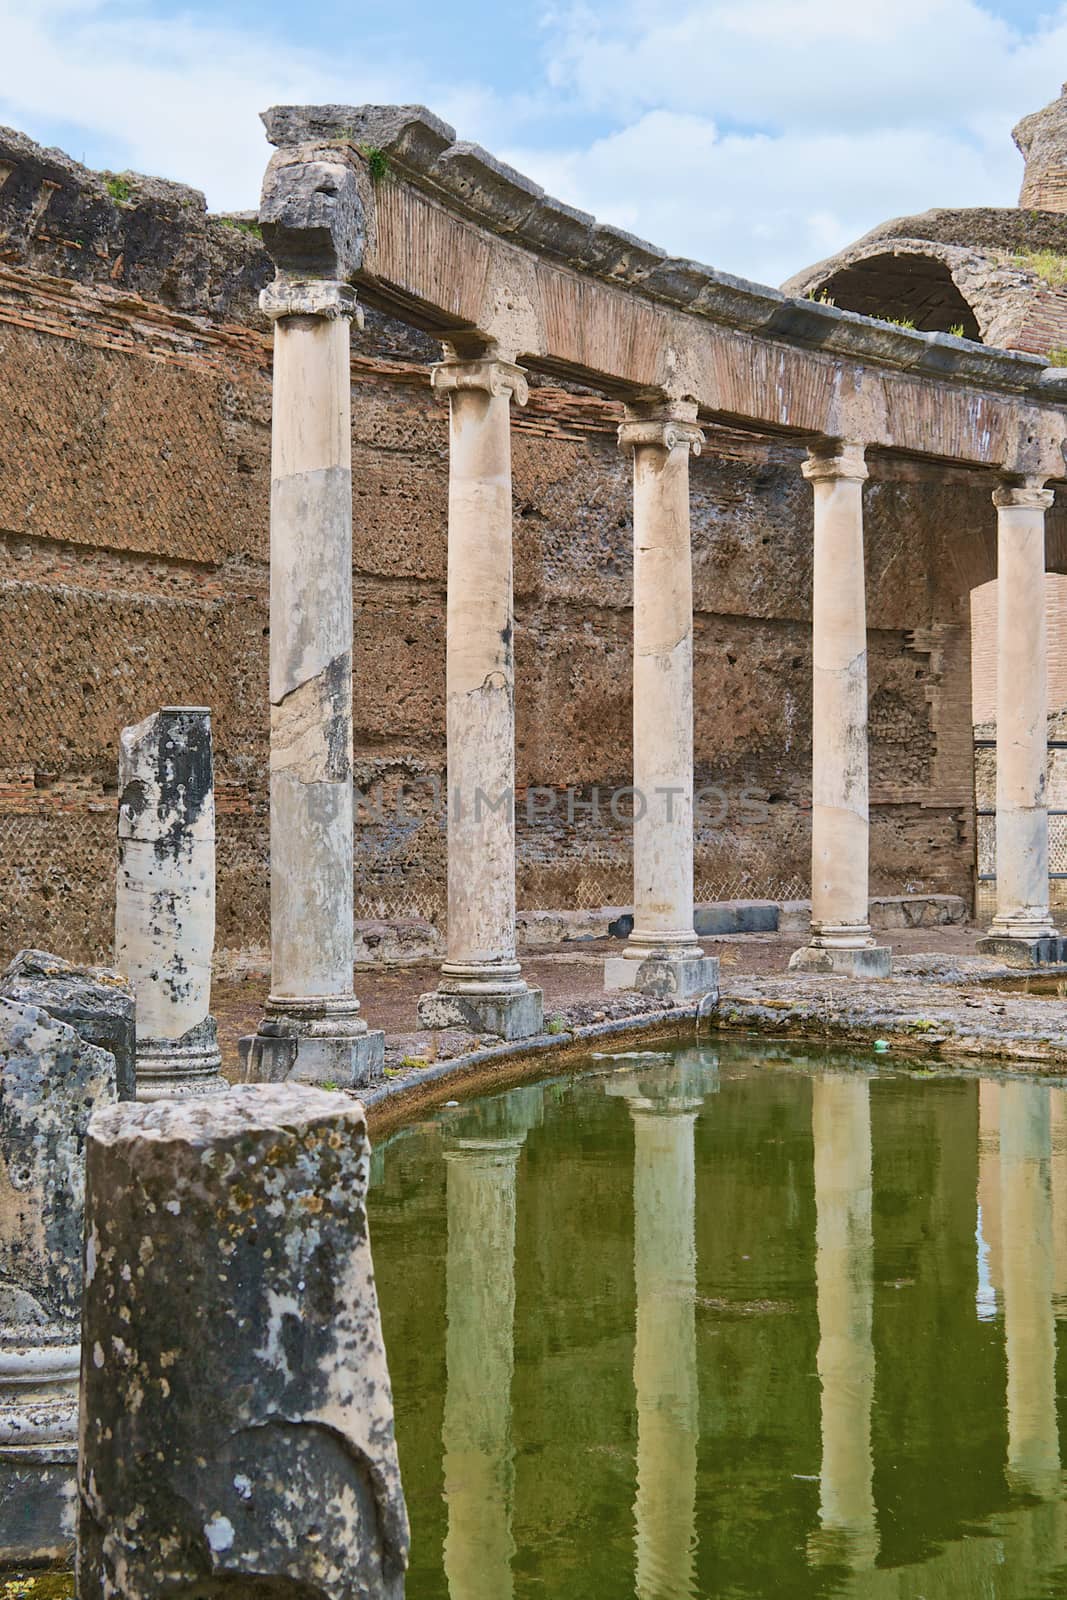 Villa di Adriano ruins in Tivoli by rosariomanzo